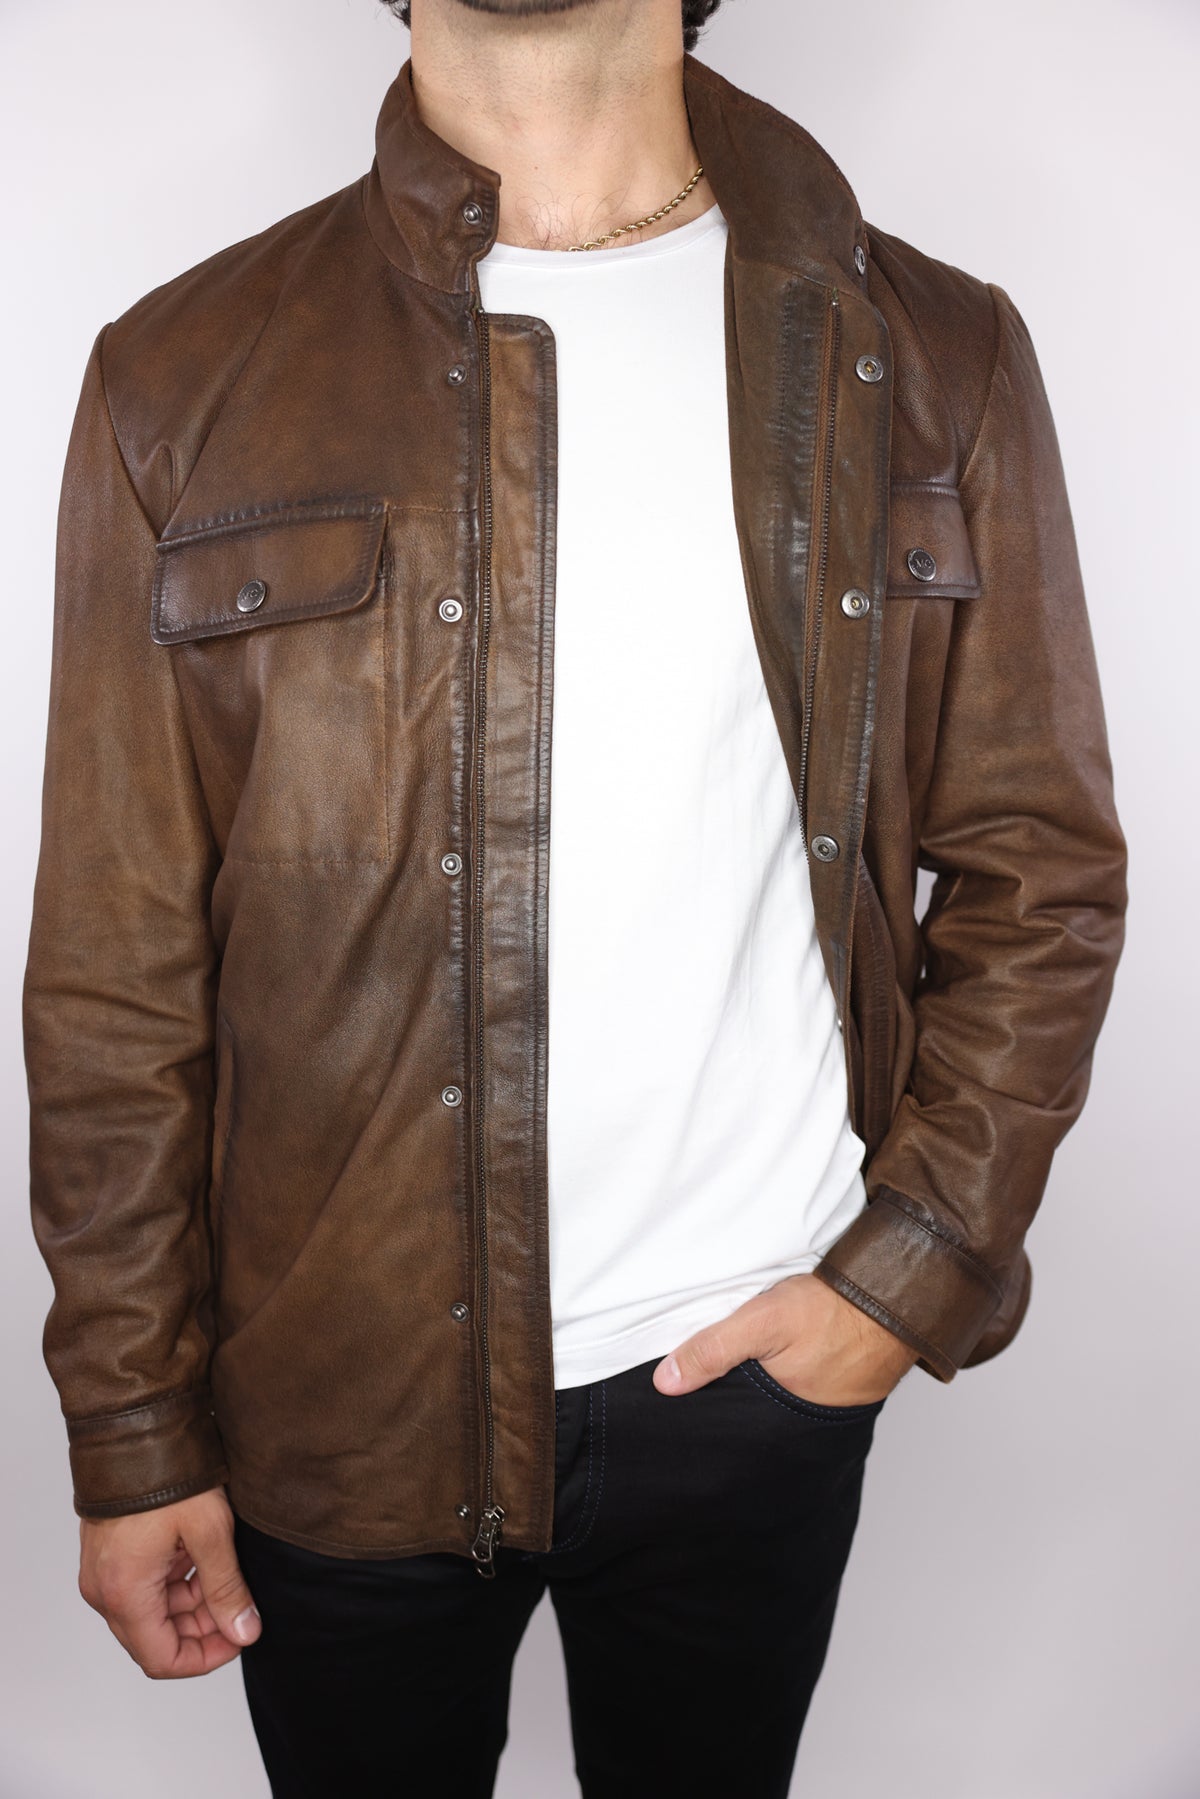 Madison Creek Frisco Leather Jacket